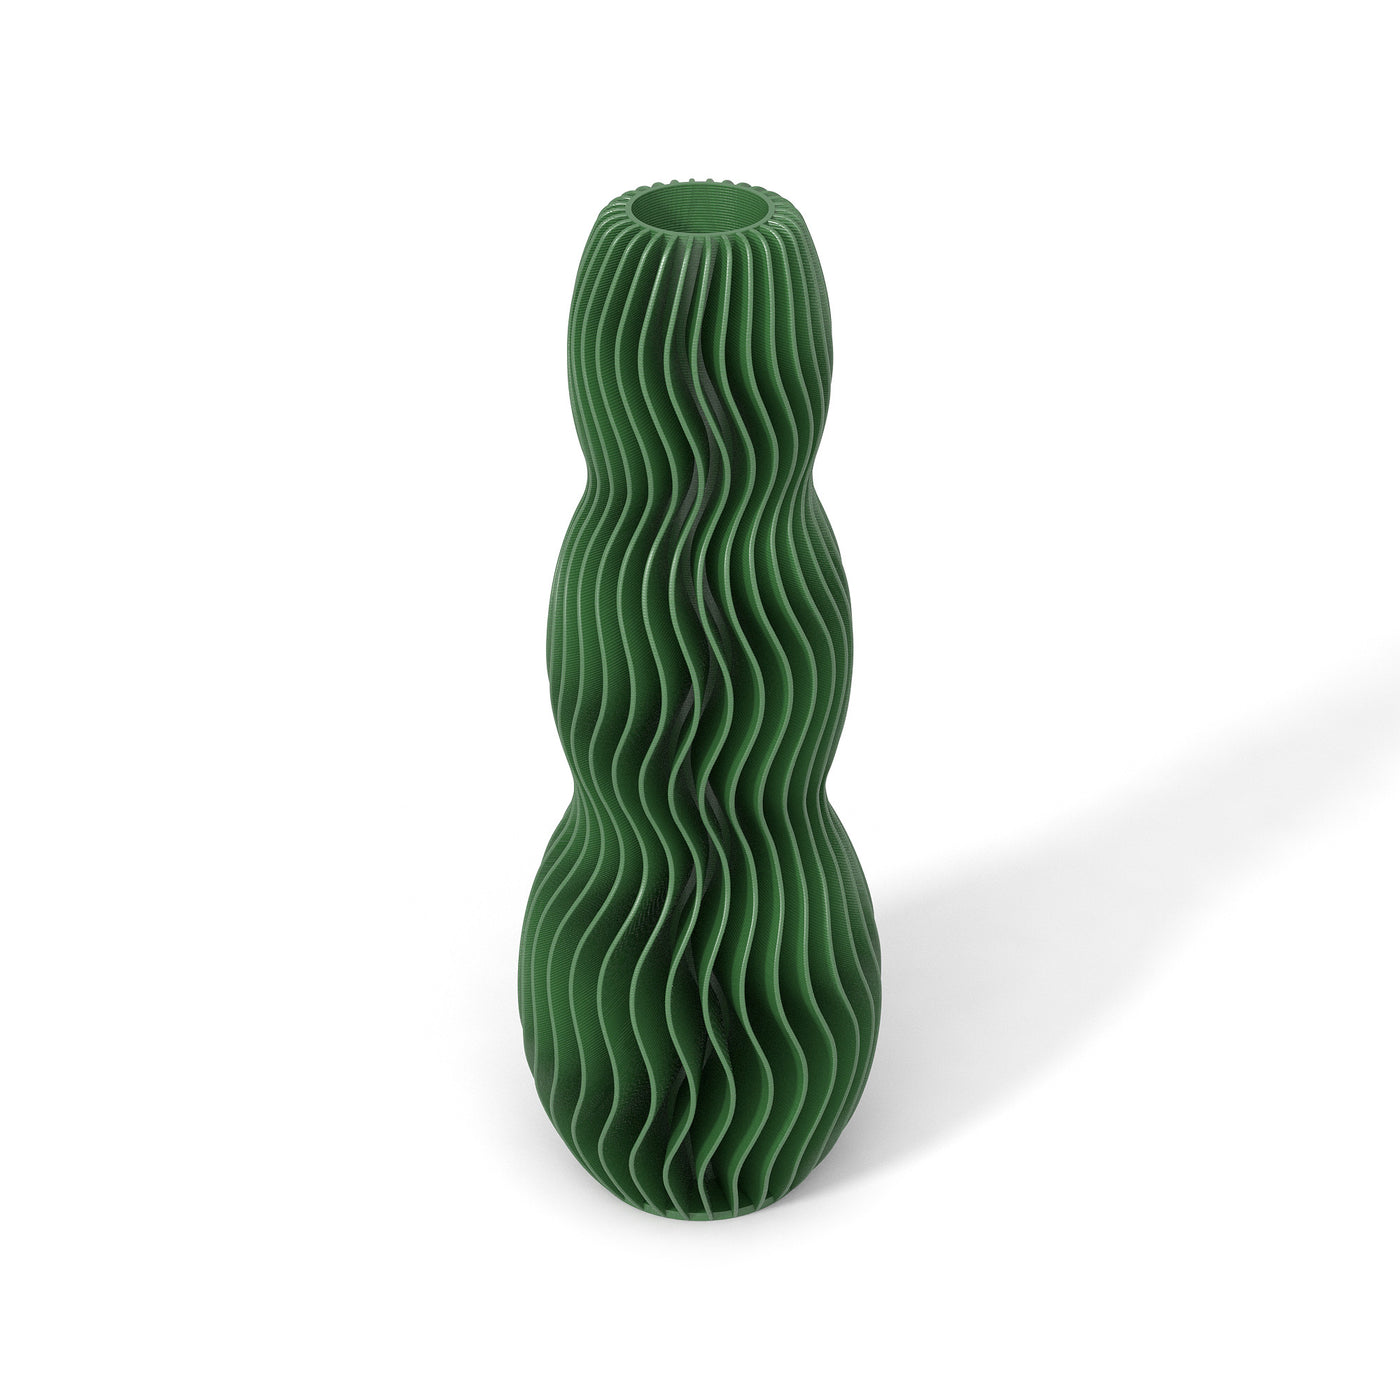 Zelená designová váza 3D print WAVE 3